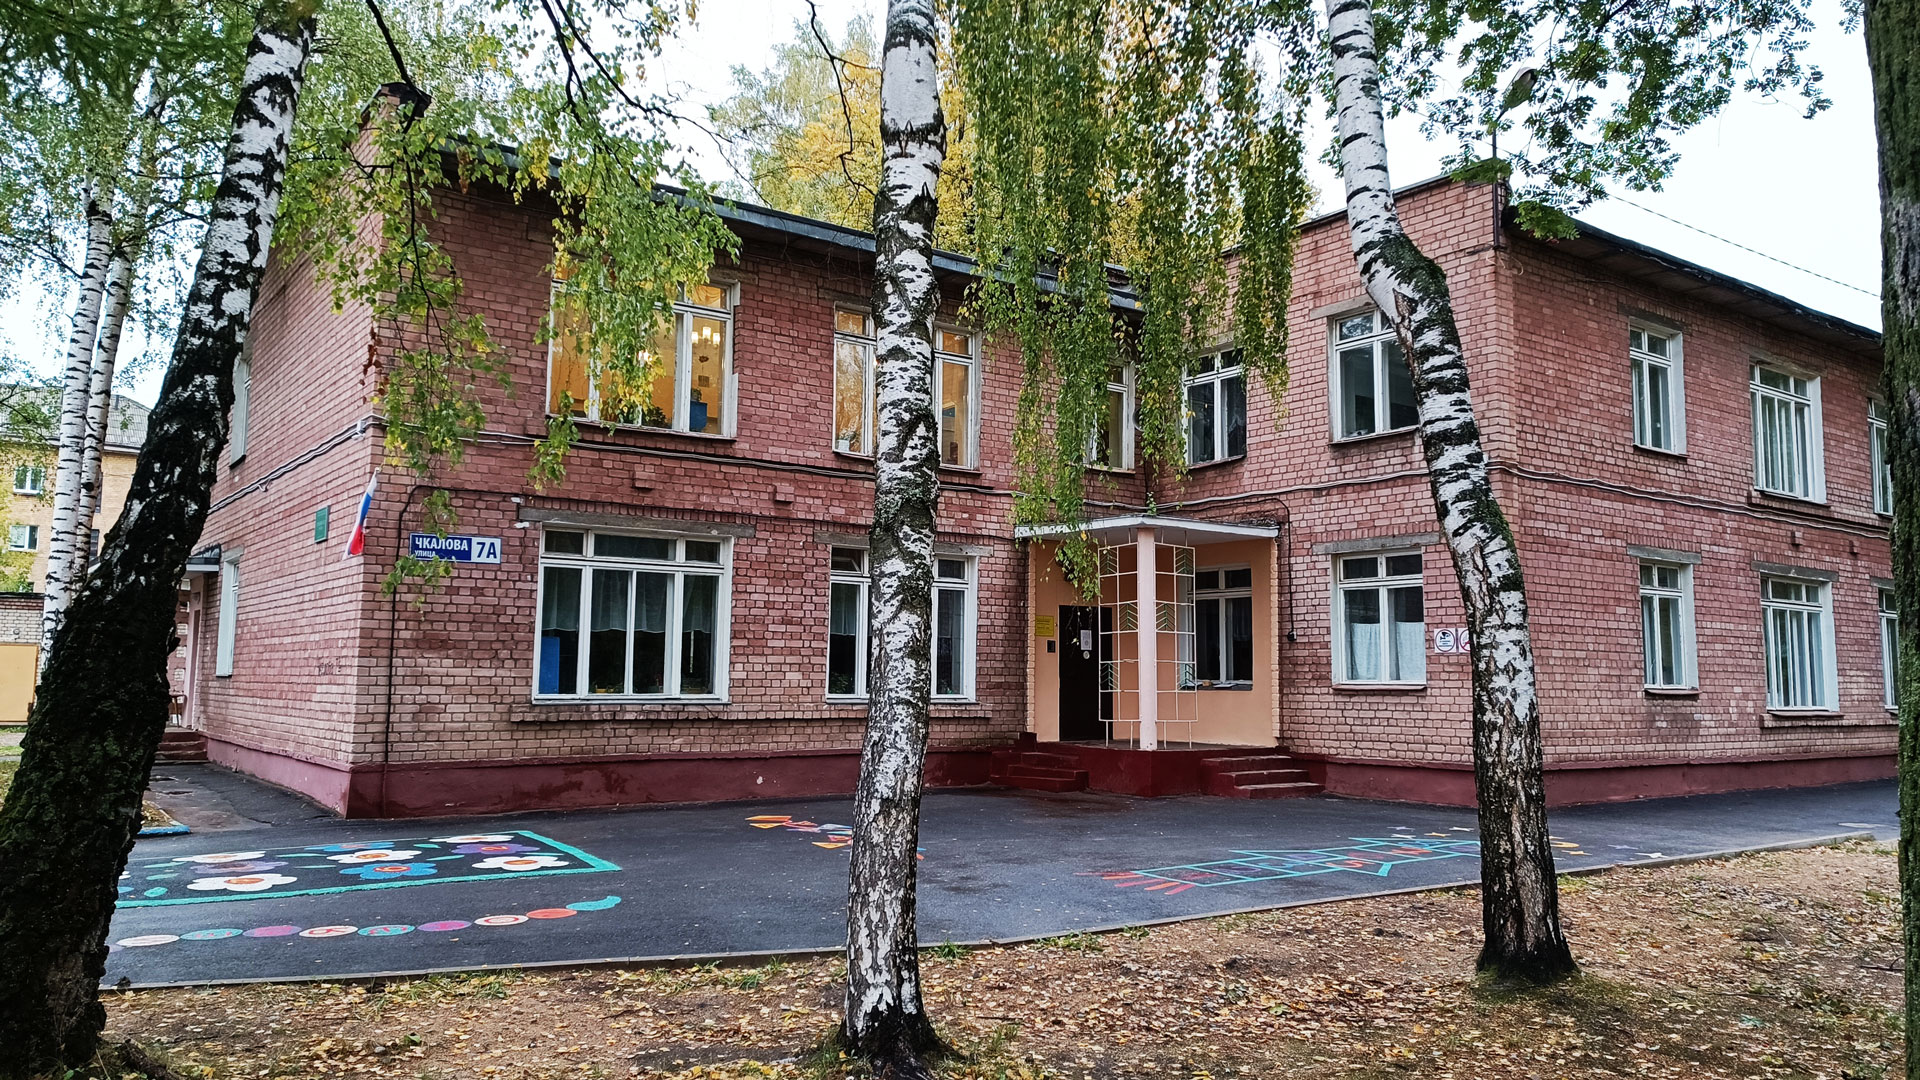 Детский сад 204 Ярославль: общий вид здания.